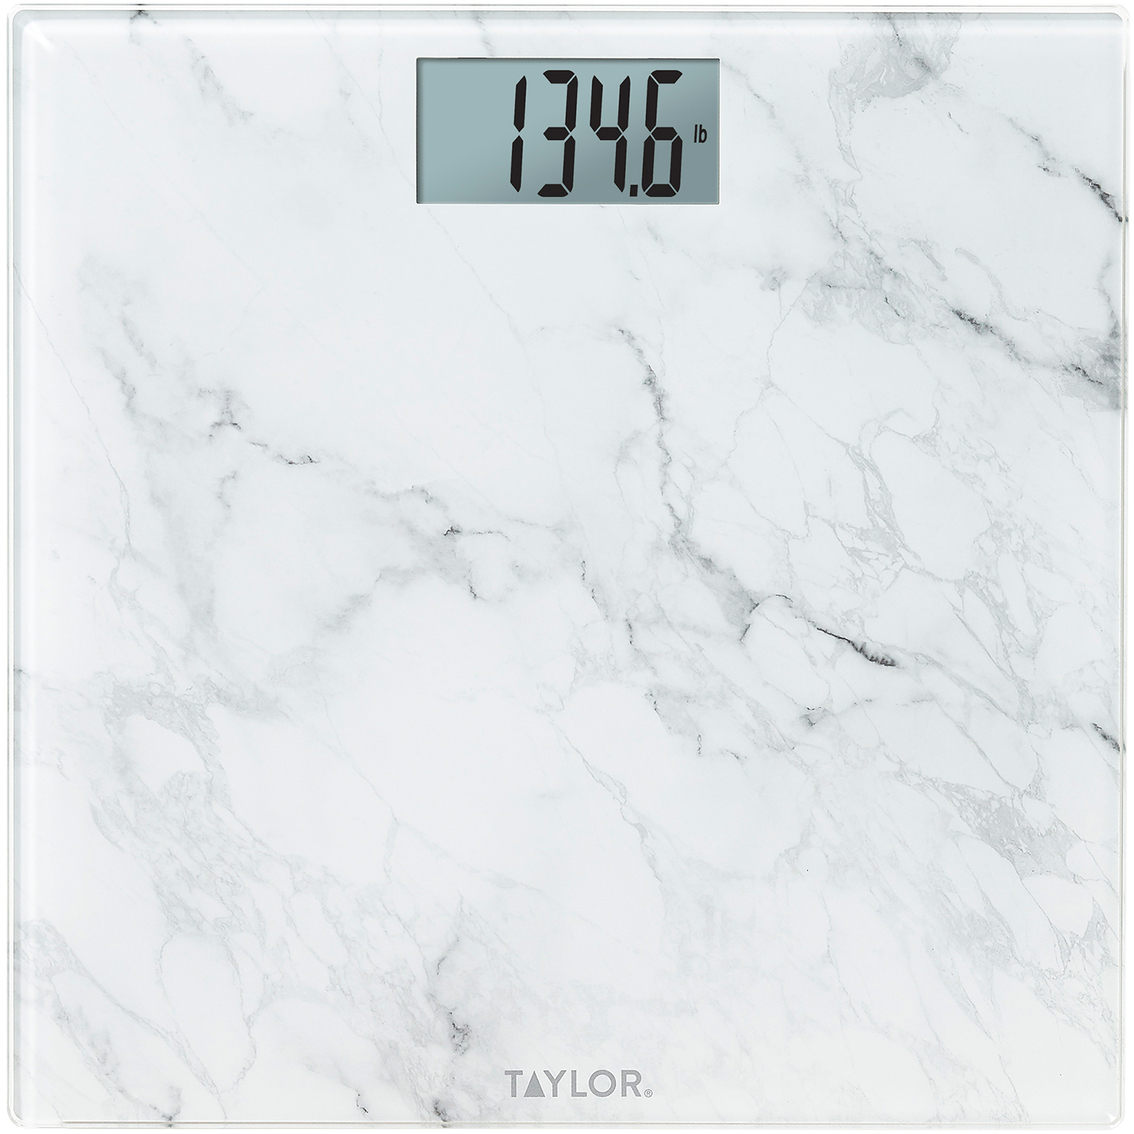 Taylor Digital Glass Bath Scale, Bath Accessories